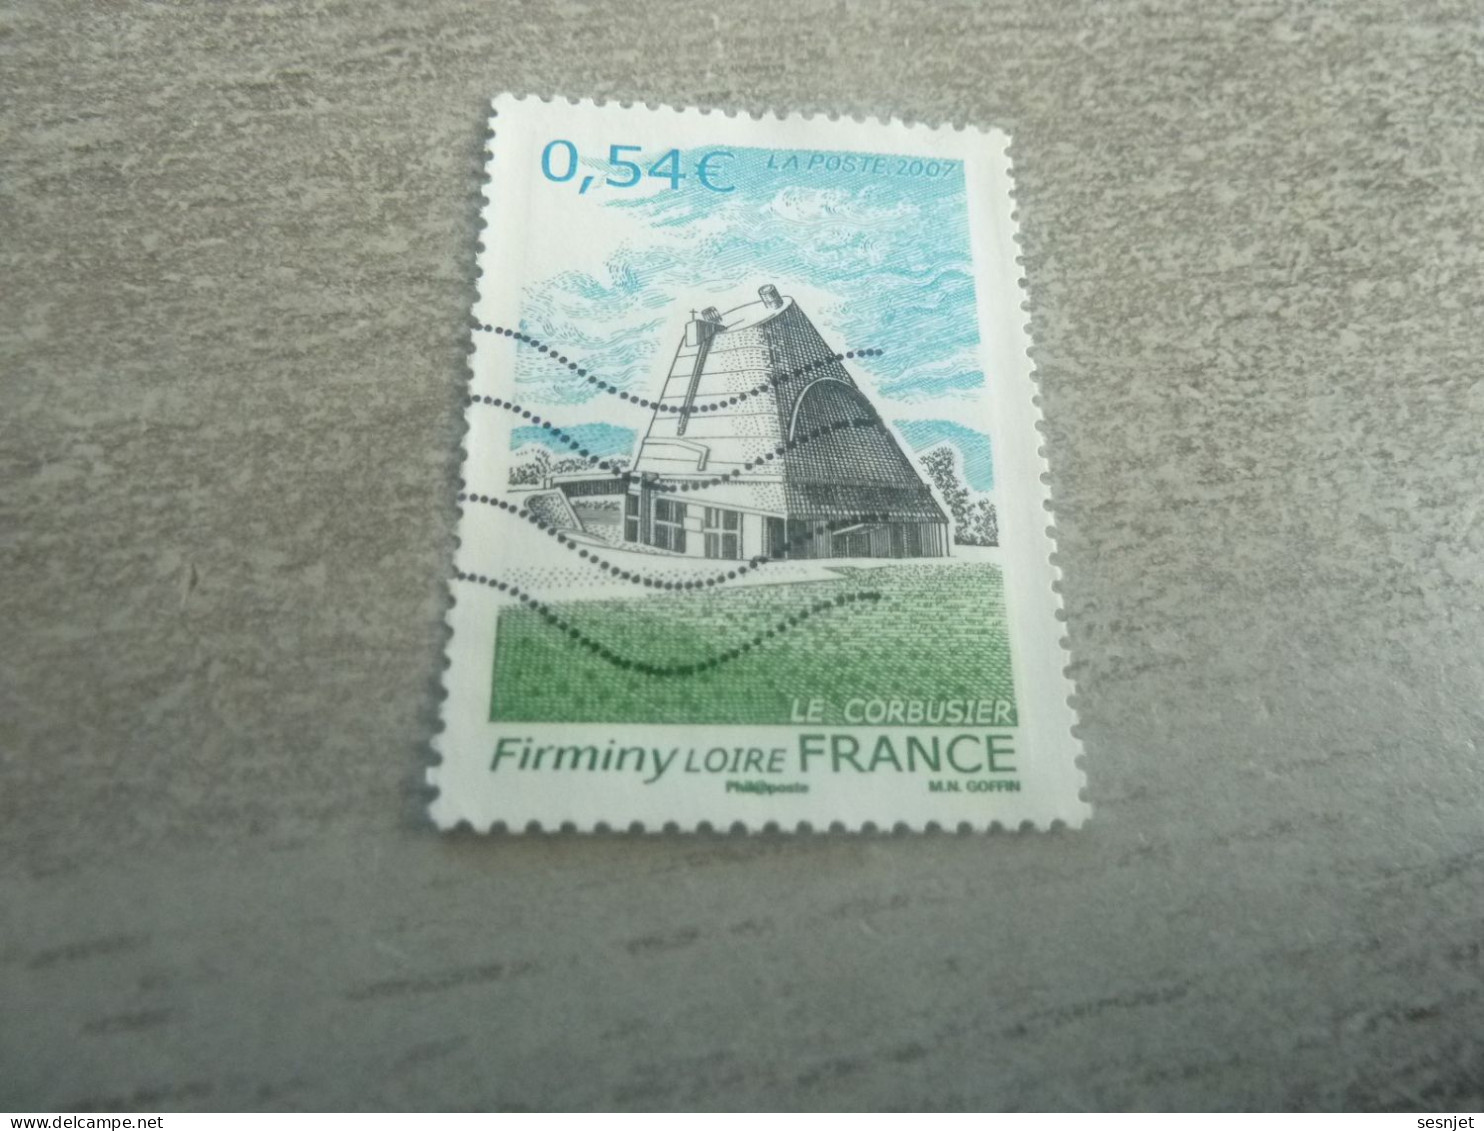 Firminy (Loire) Eglise Saint-Pierre Le Corbusier (1887-1965) - 0.54 € - Yt 4087 - Multicolore - Oblitéré - Année 2007 - - Used Stamps